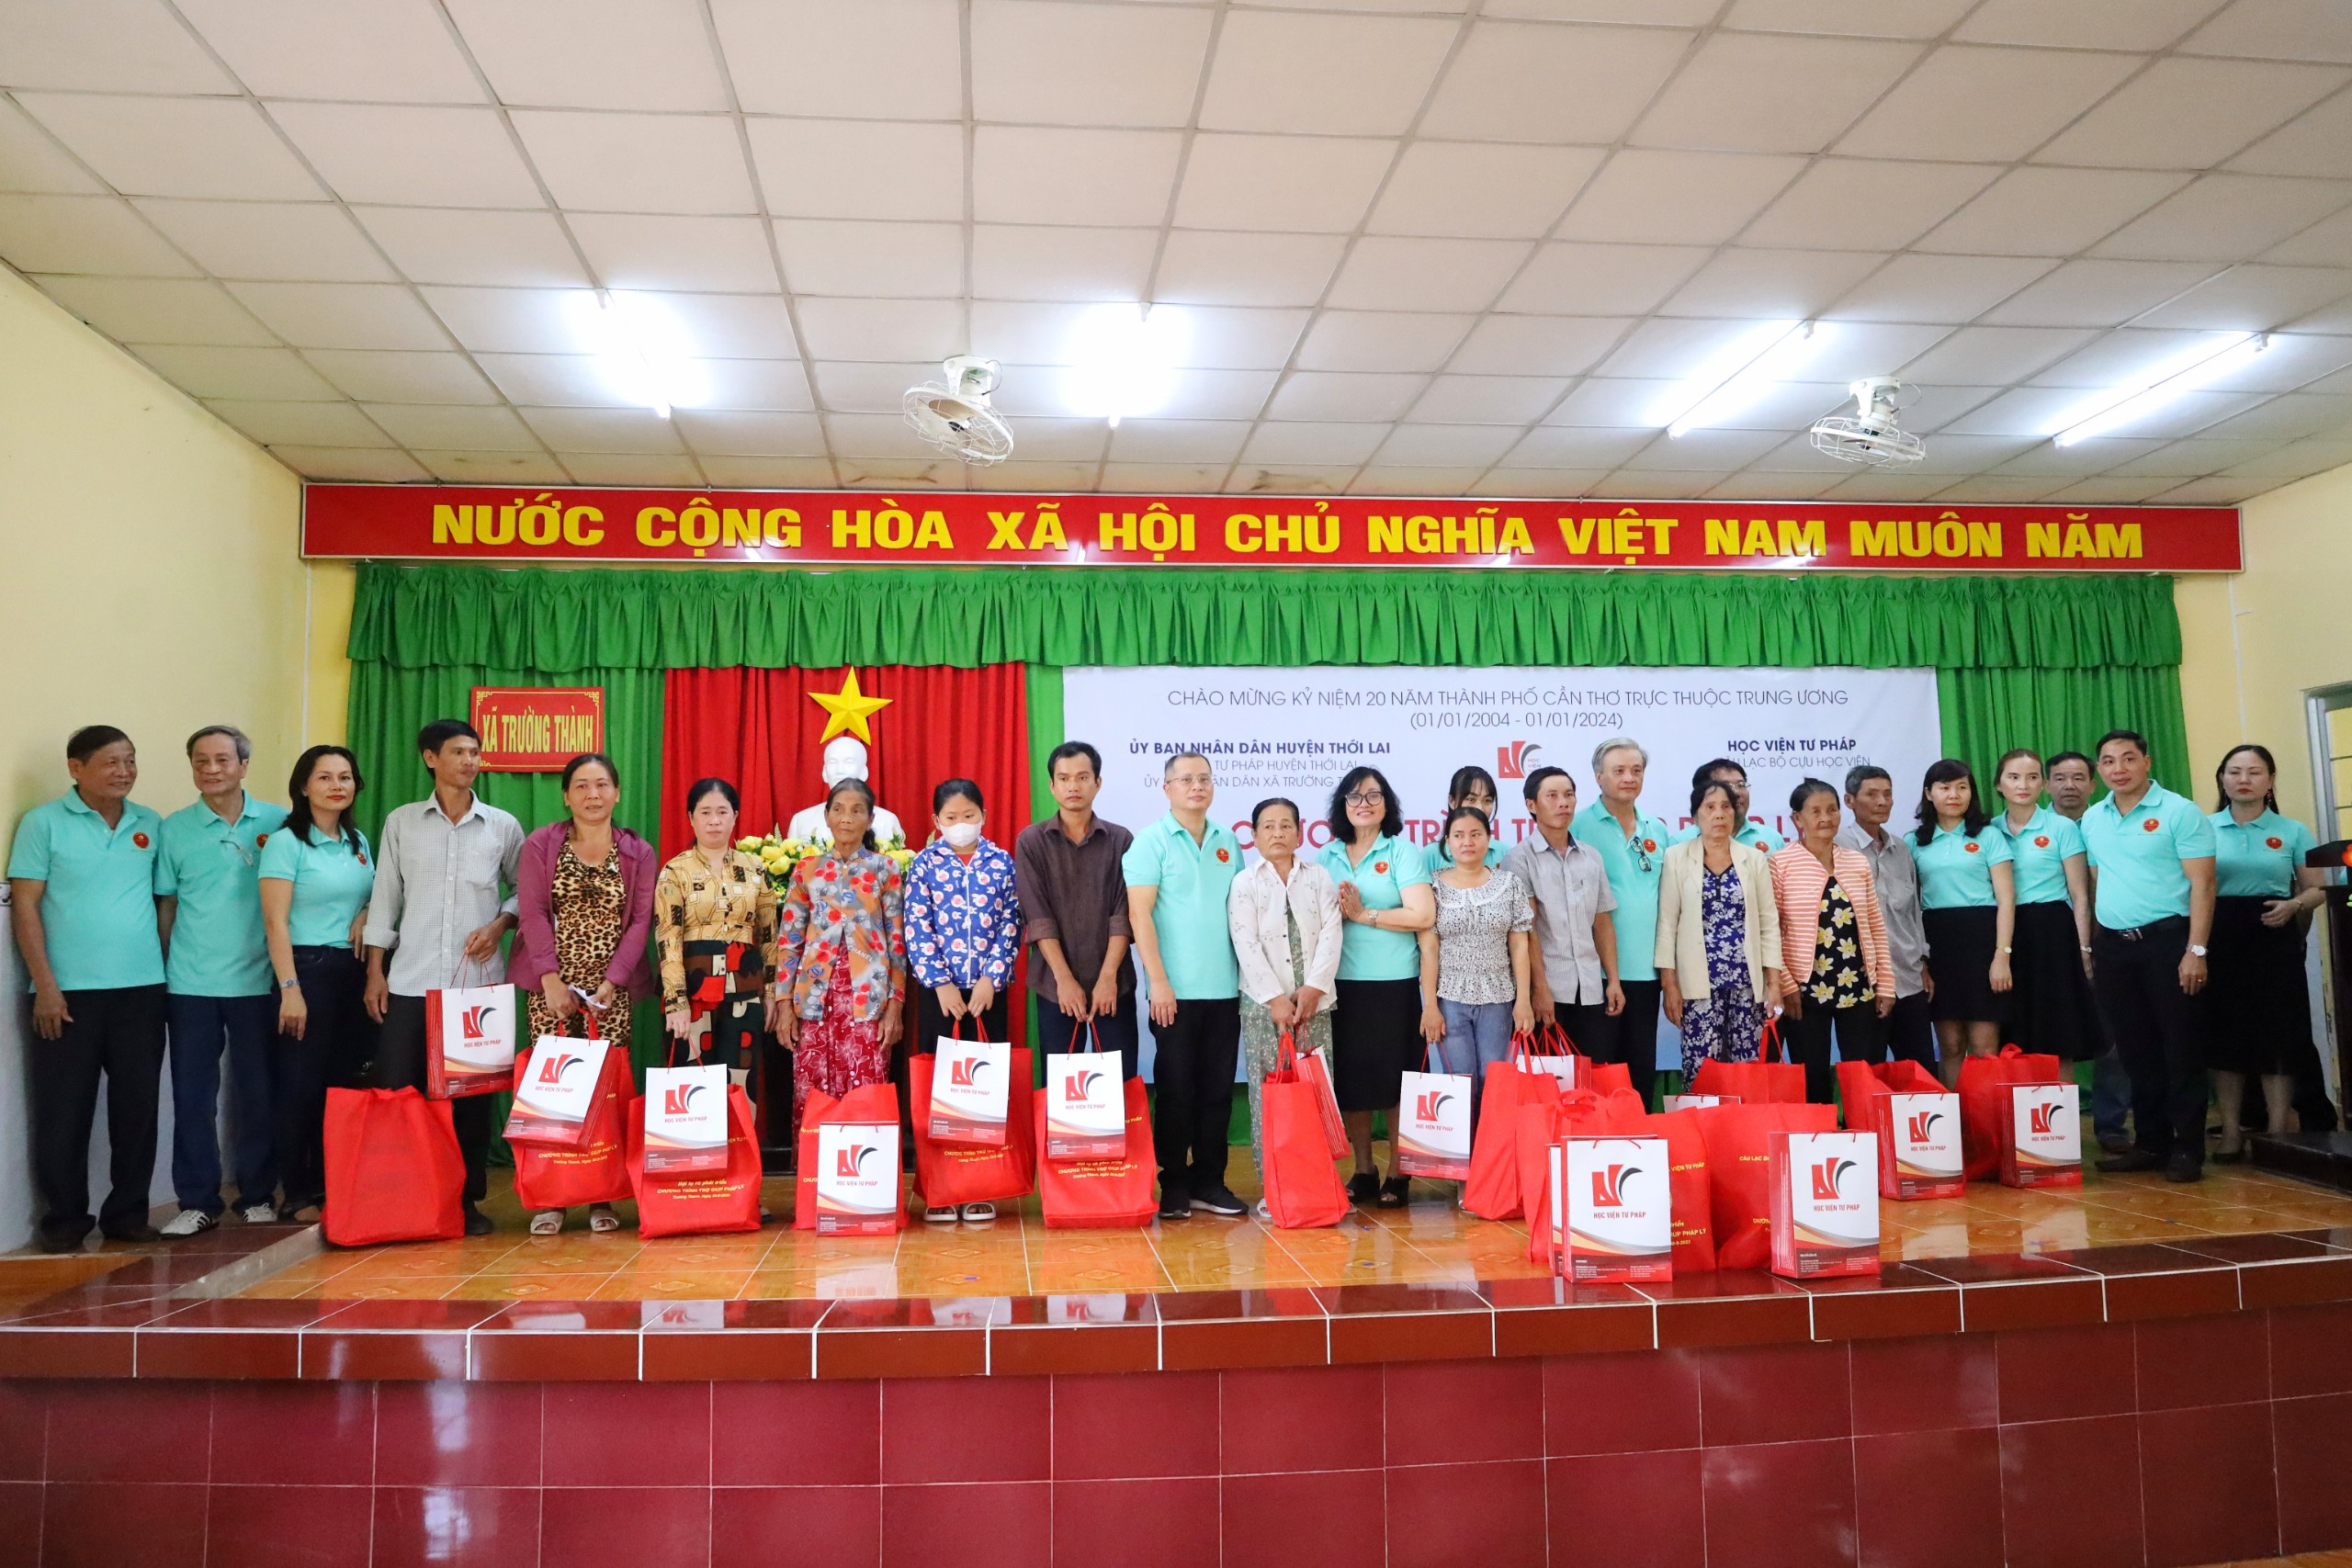 Dịp này, Cựu học viên Học viện Tư pháp kết hợp với Công đoàn Học viện đã trao 150 phần quà cho người nghèo ở xã Trường Thành, huyện Thới Lai.